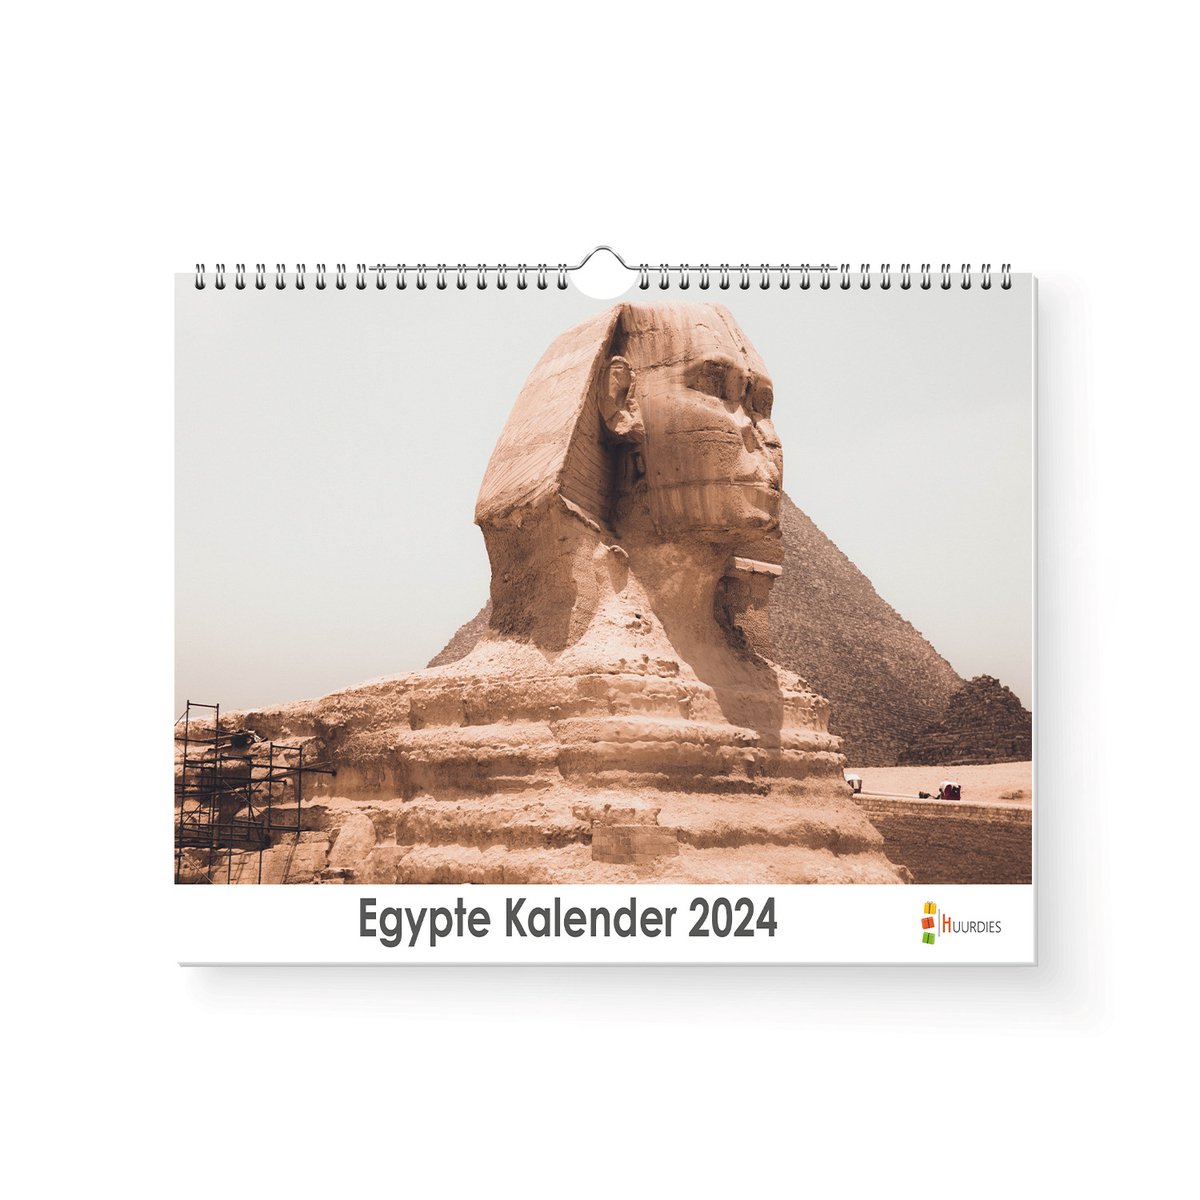 Huurdies - Egypte Kalender - Jaarkalender 2024 - 35x24 - 300gms